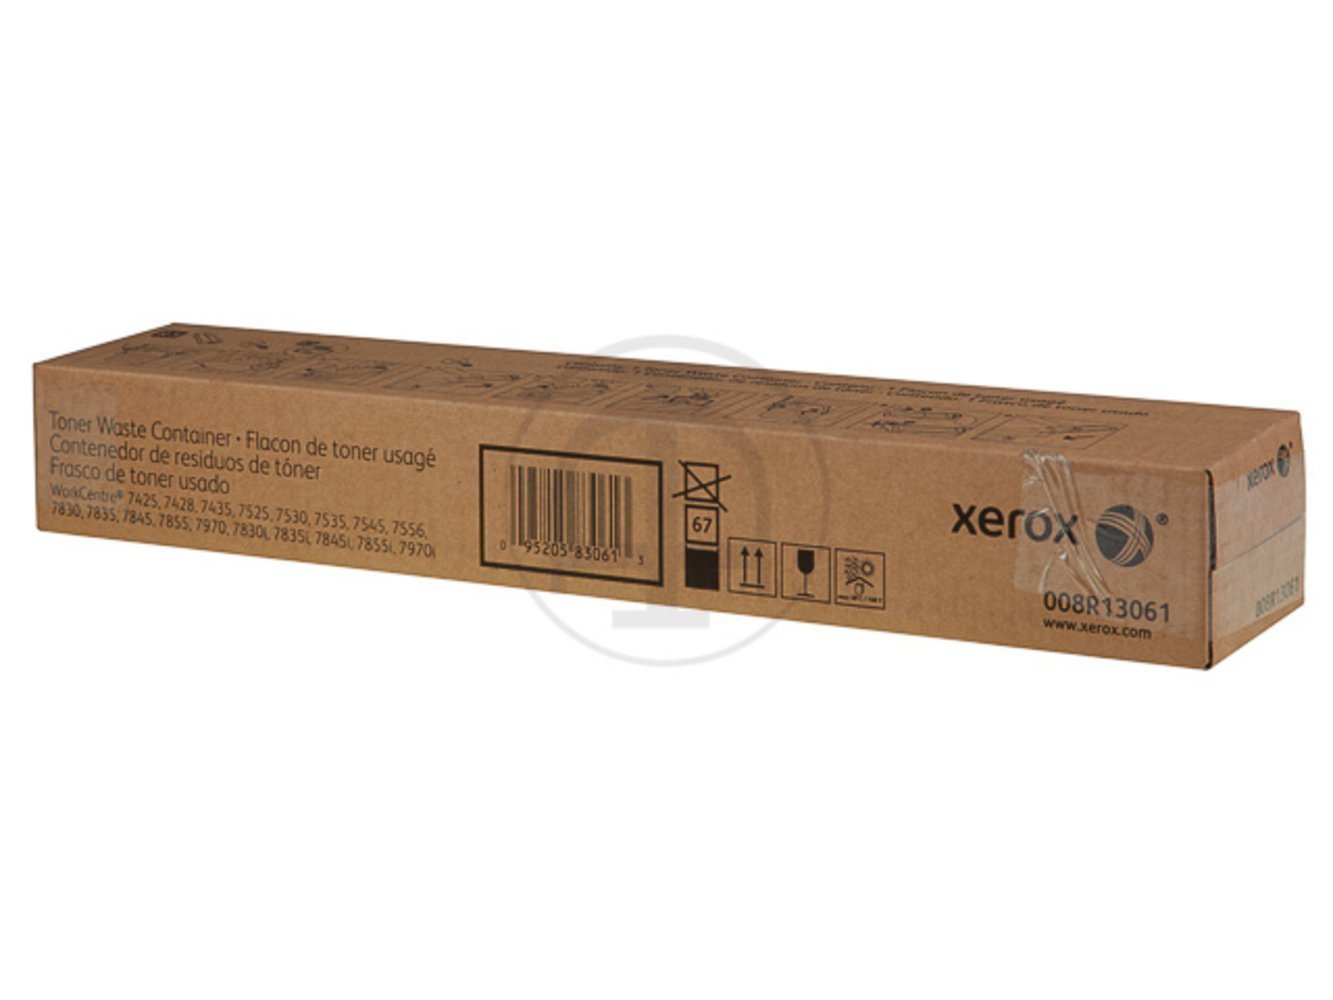 XEROX Effizienter Drucker mit einer Kapazität von 43.000 Seiten